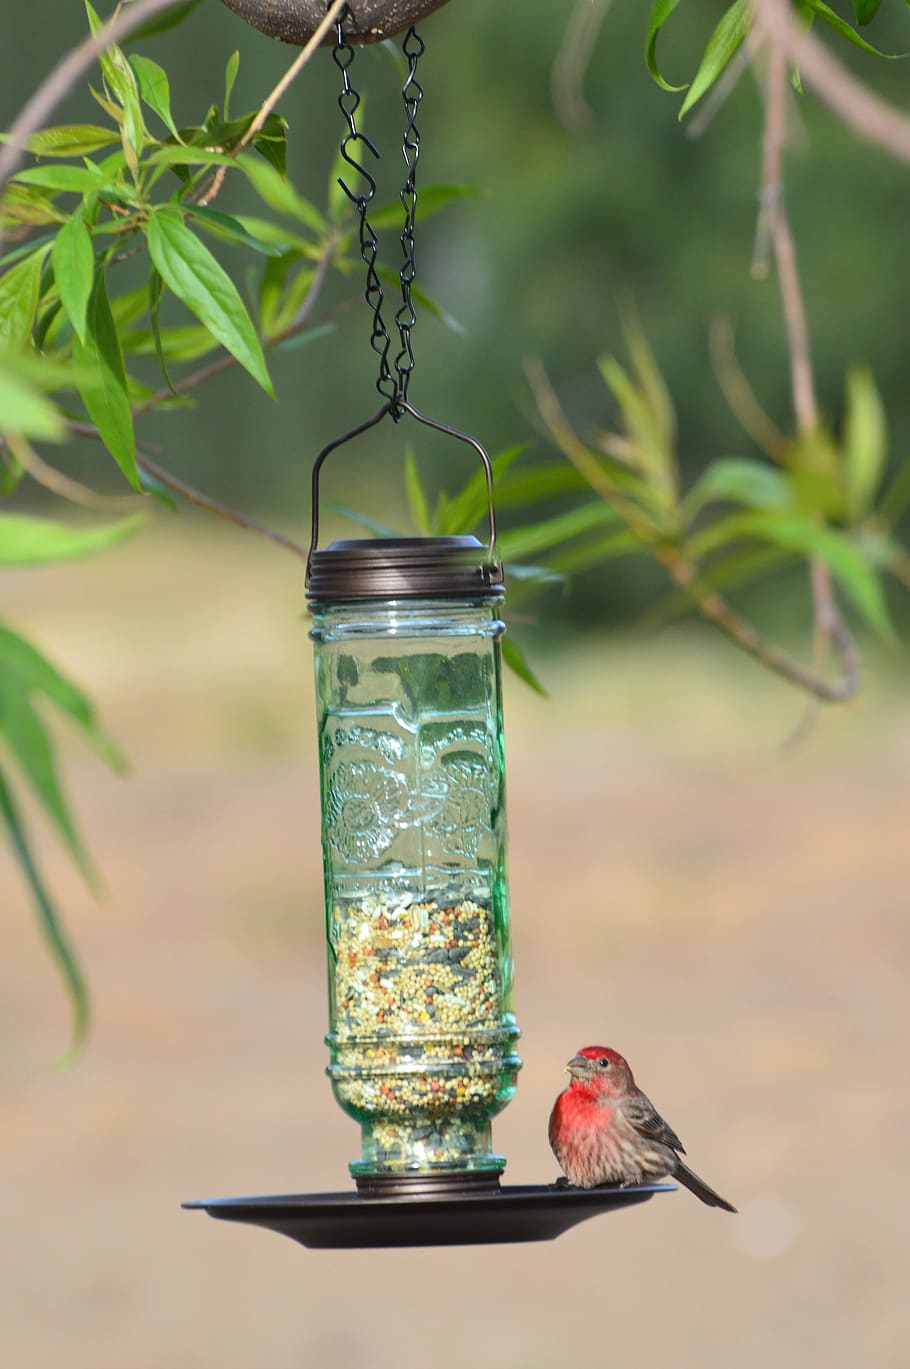 bird, bird feeder, house finch, wildlife, feeder, garden, songbird, cute, feathers, red